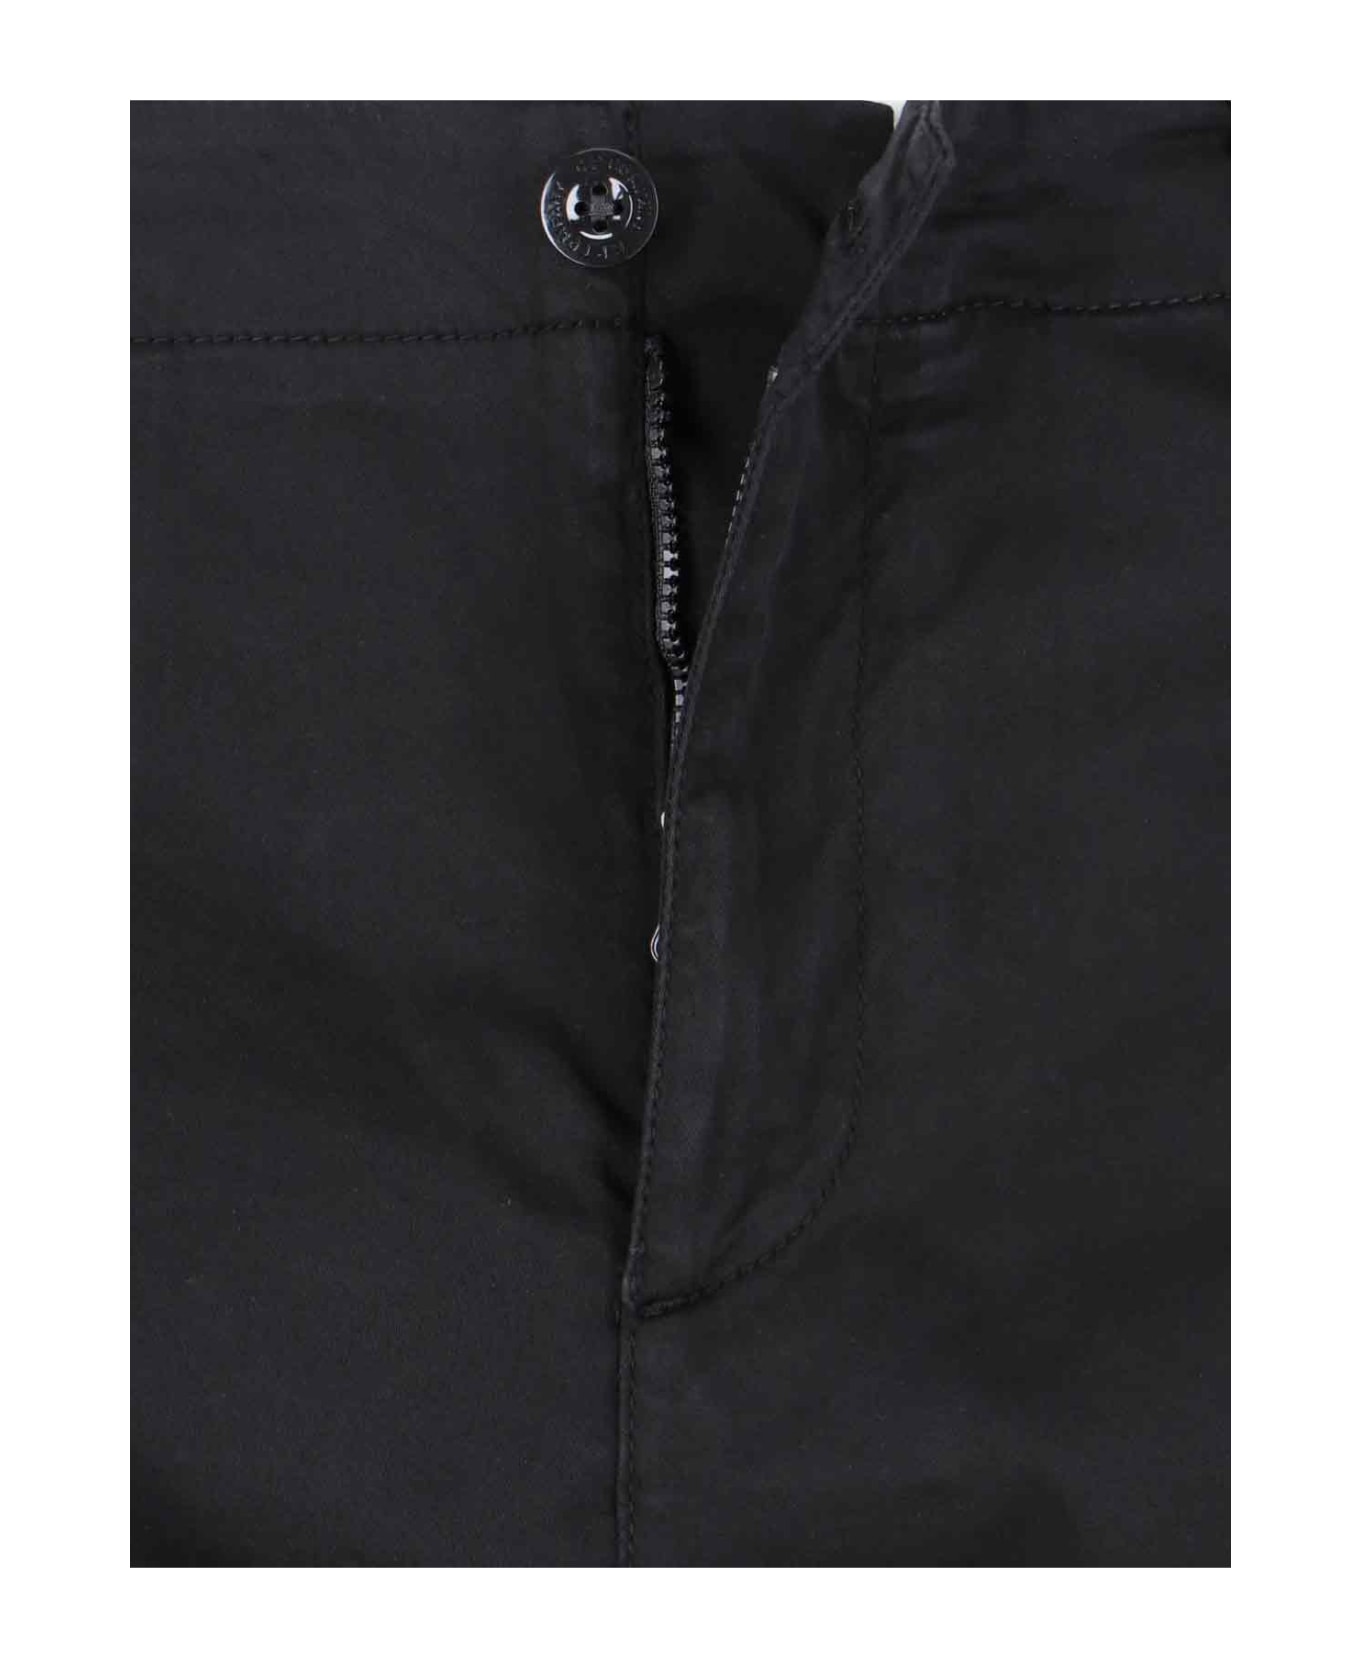 C.P. Company Cargo Shorts - Black